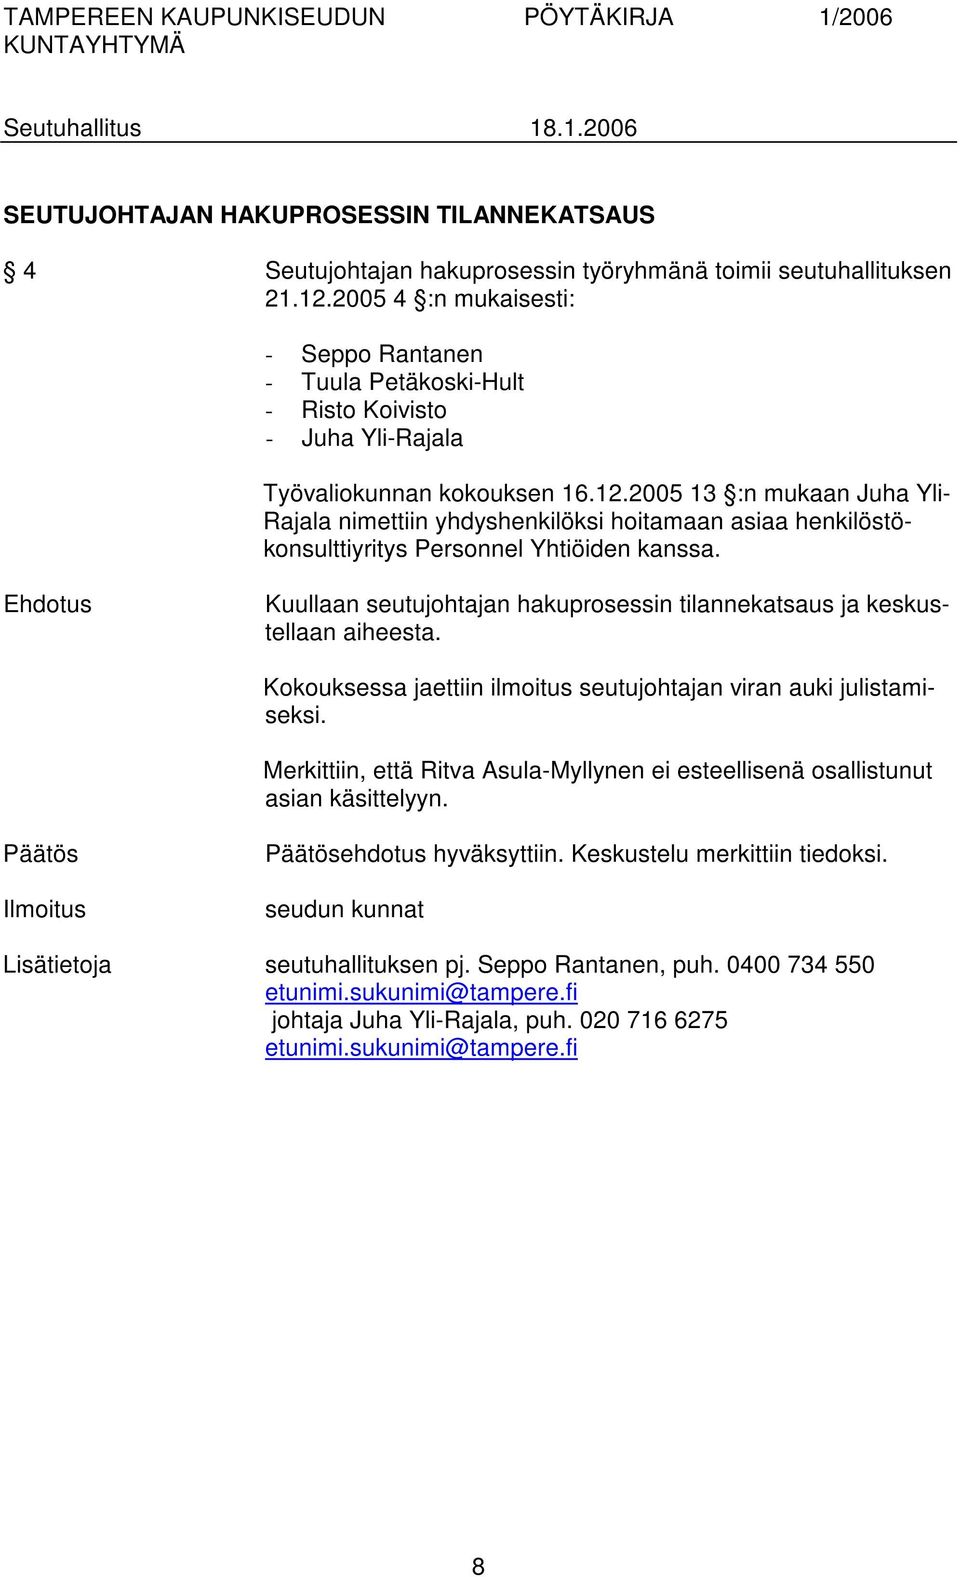 2005 13 :n mukaan Juha Yli- Rajala nimettiin yhdyshenkilöksi hoitamaan asiaa henkilöstökonsulttiyritys Personnel Yhtiöiden kanssa.